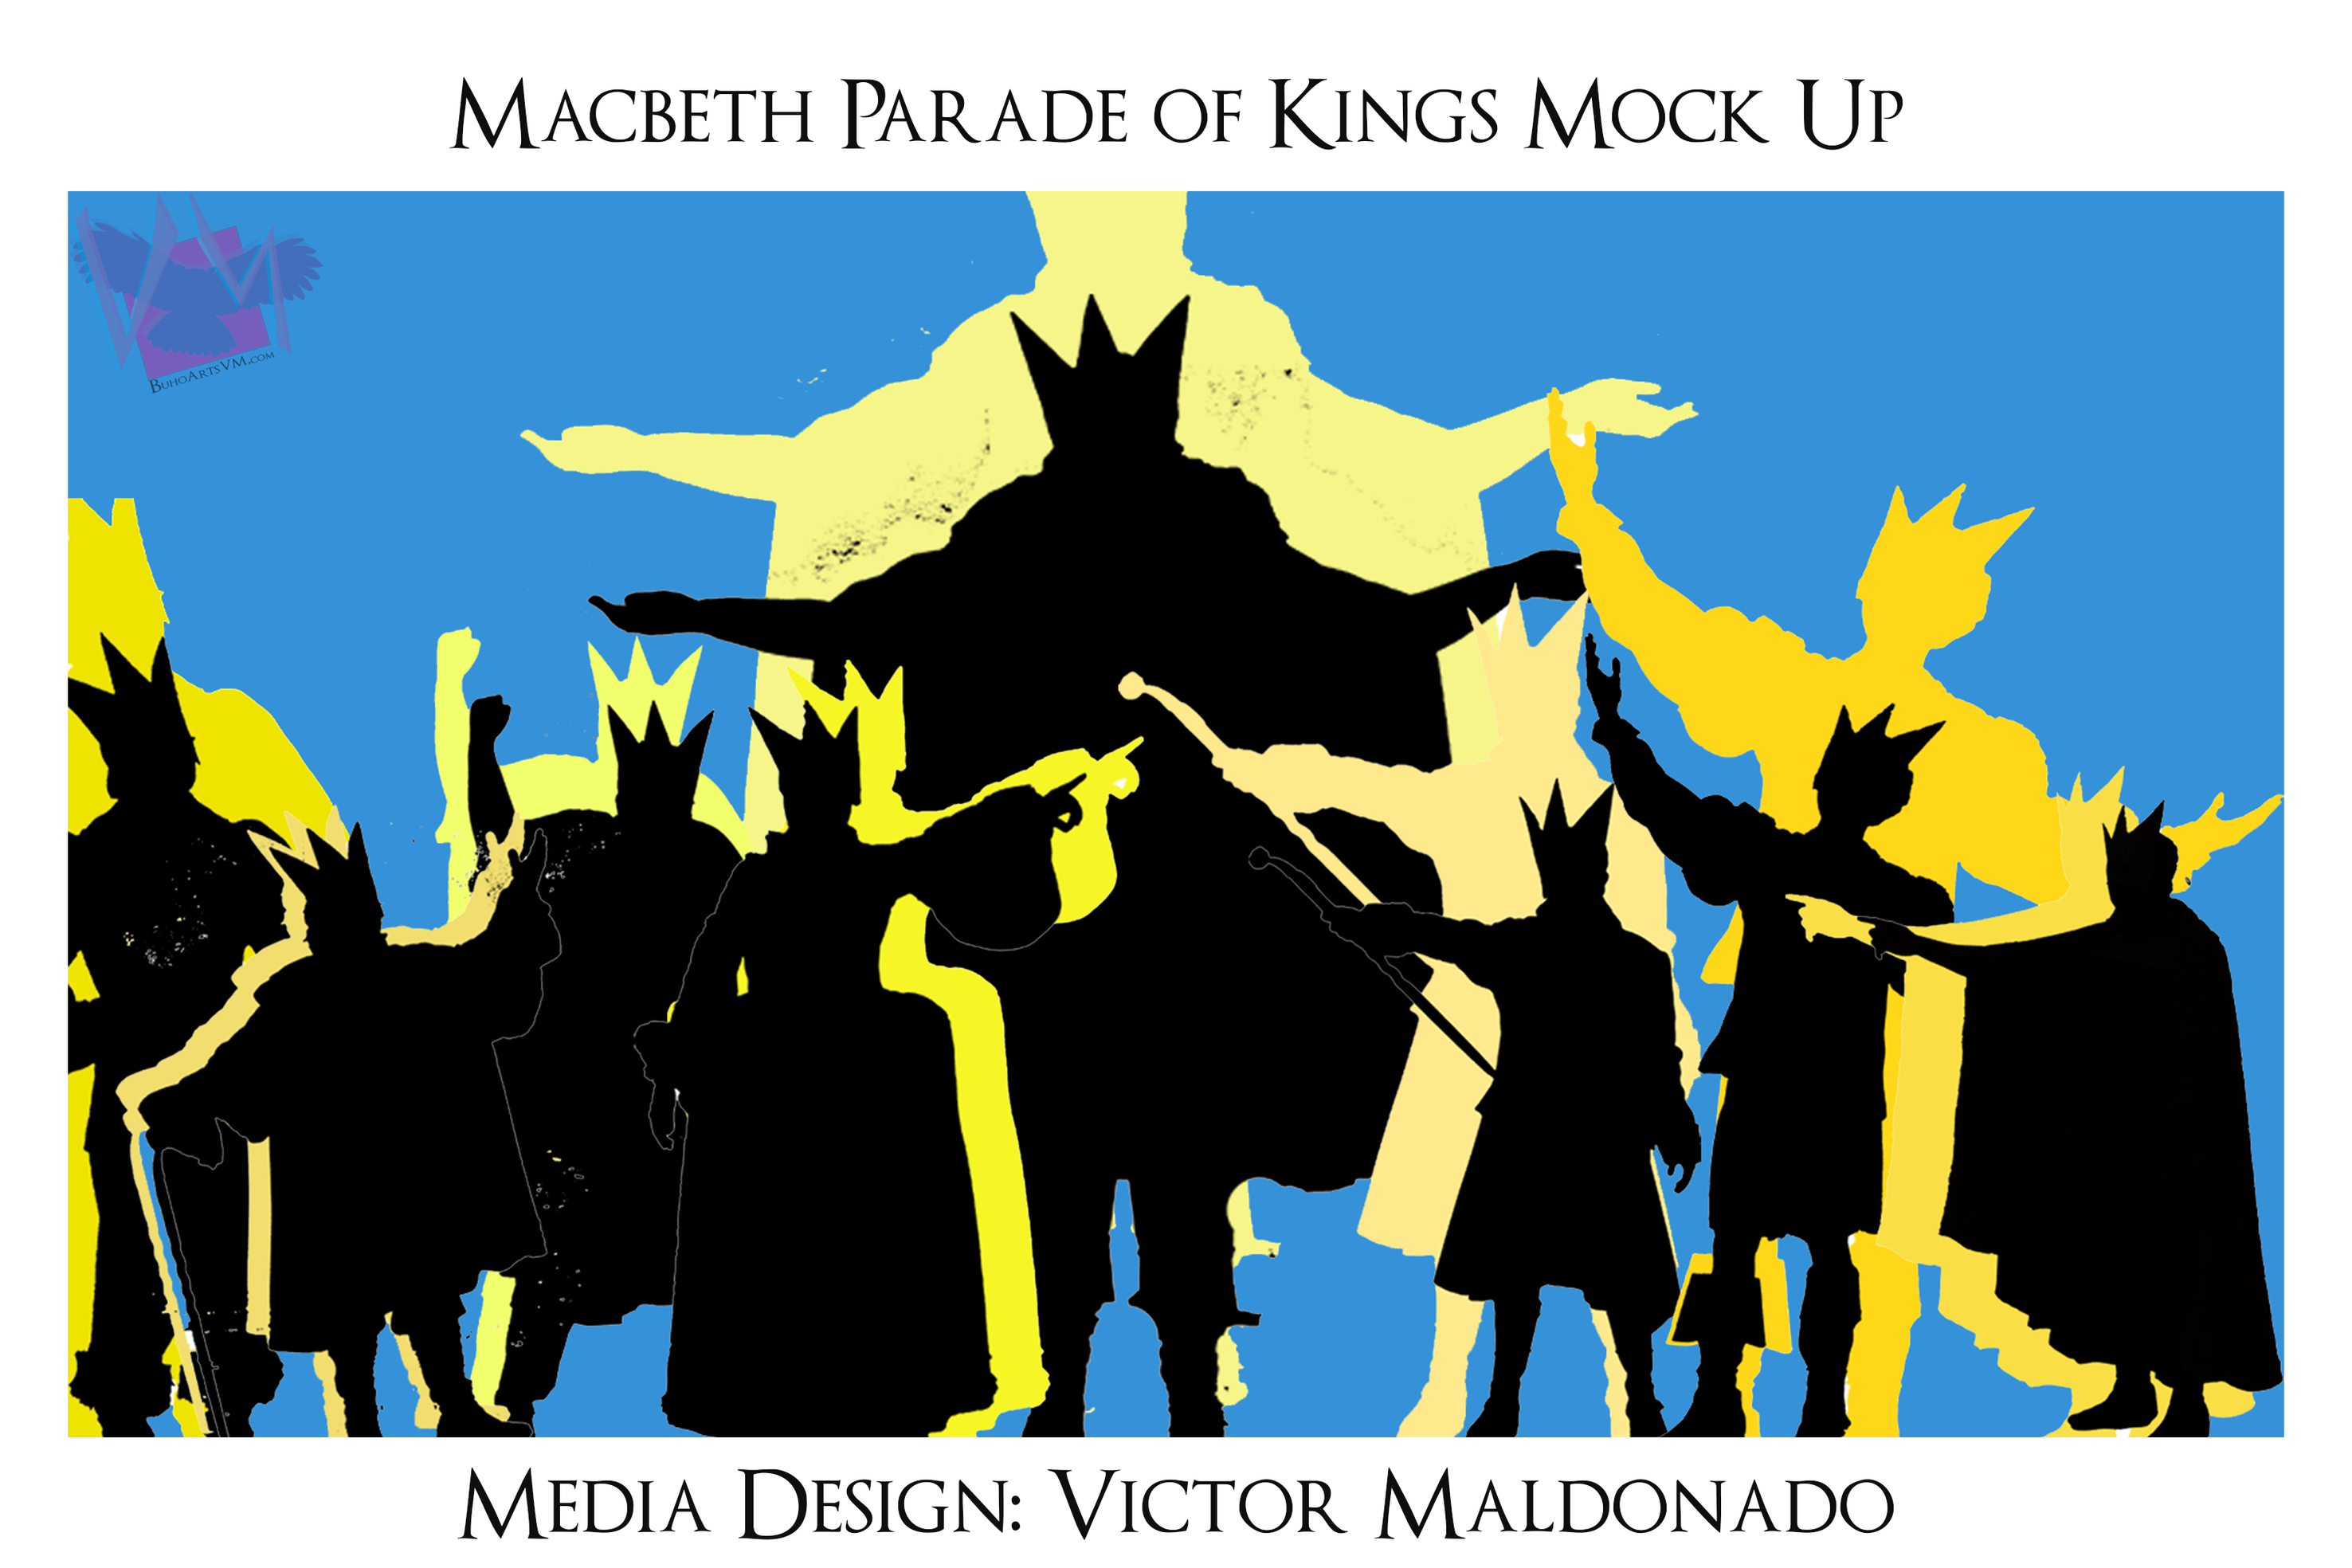 Macbeth Parade of Kings media design rendering by Victor Maldonado